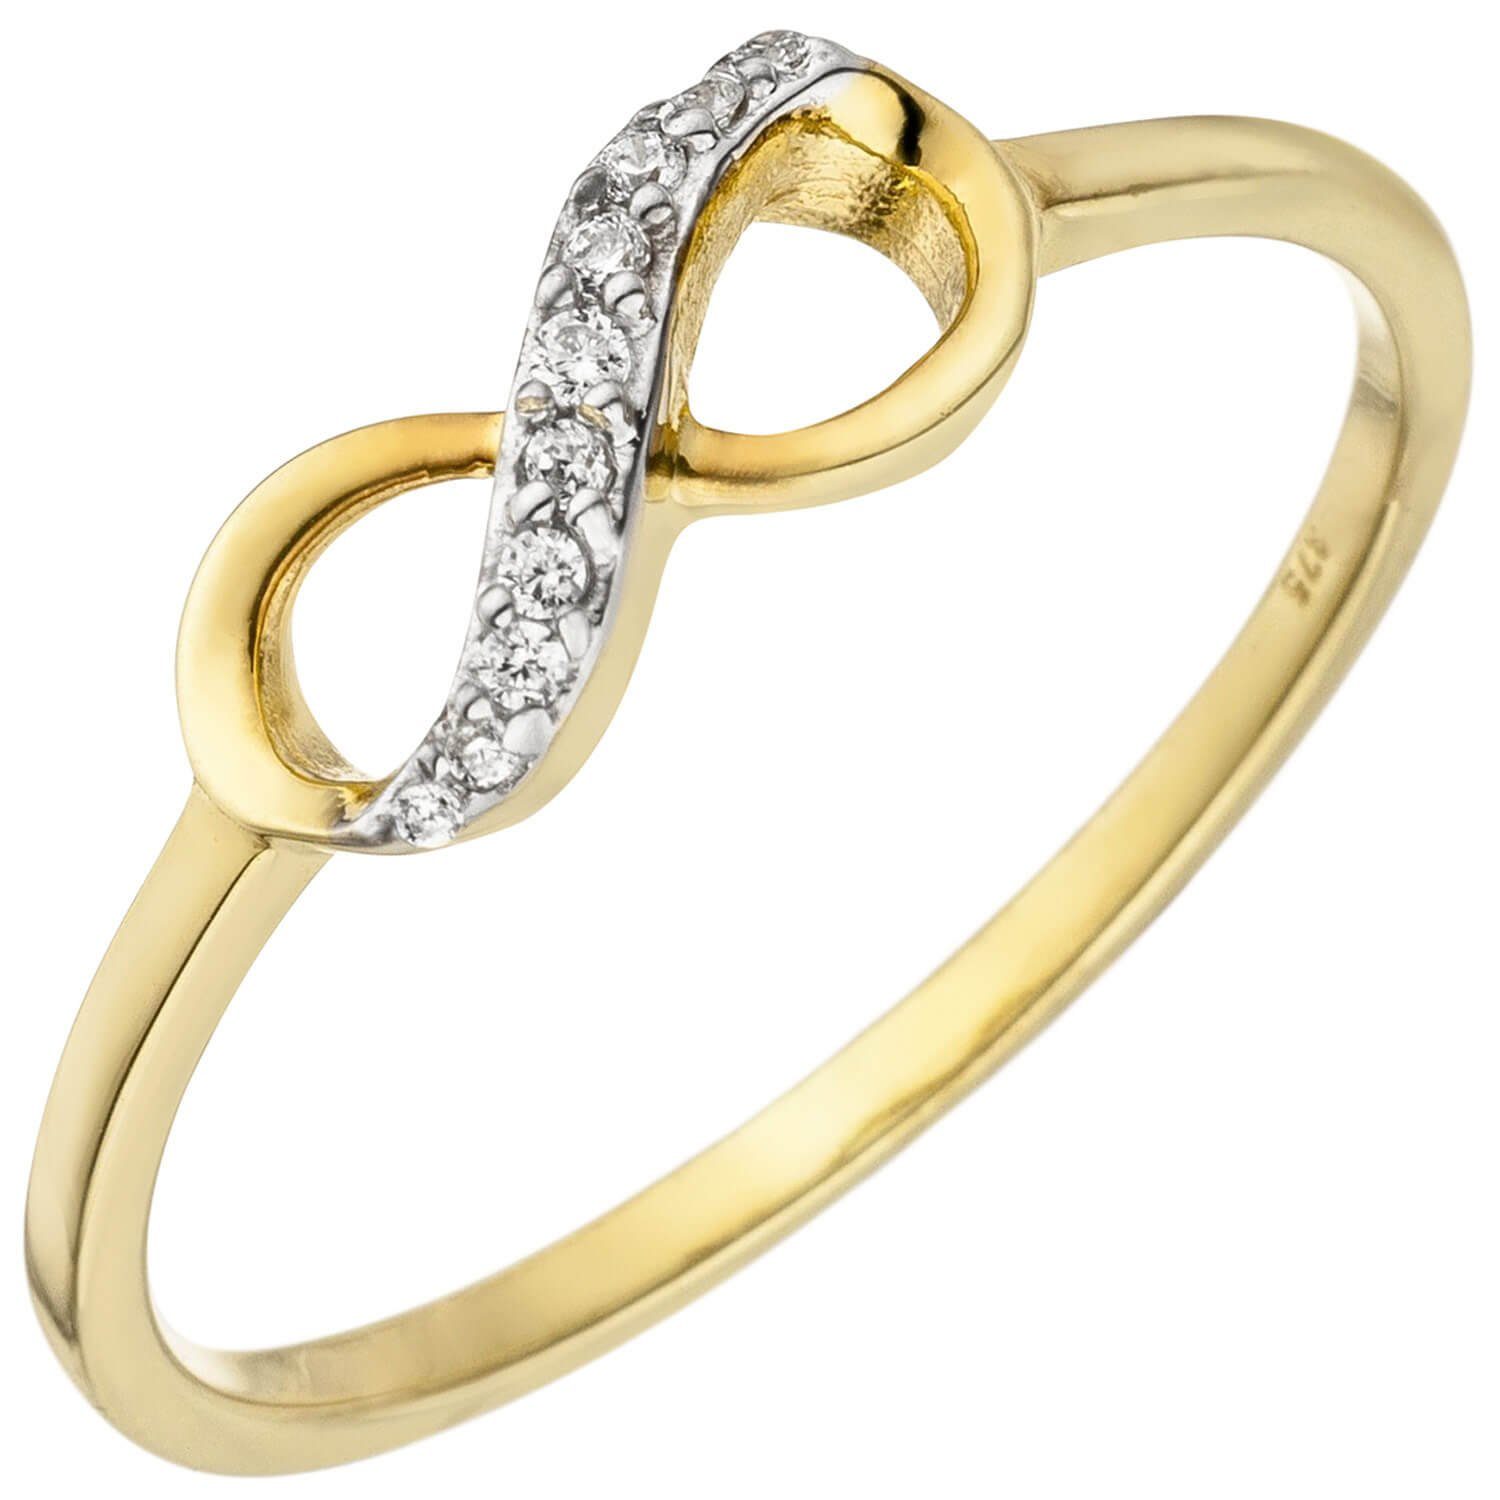 Schmuck Krone Fingerring Unendlichkeit Zirkonia, 8 Damenring mit 375 weißen Gelbgold, Gold Infinity Ring Gold 375